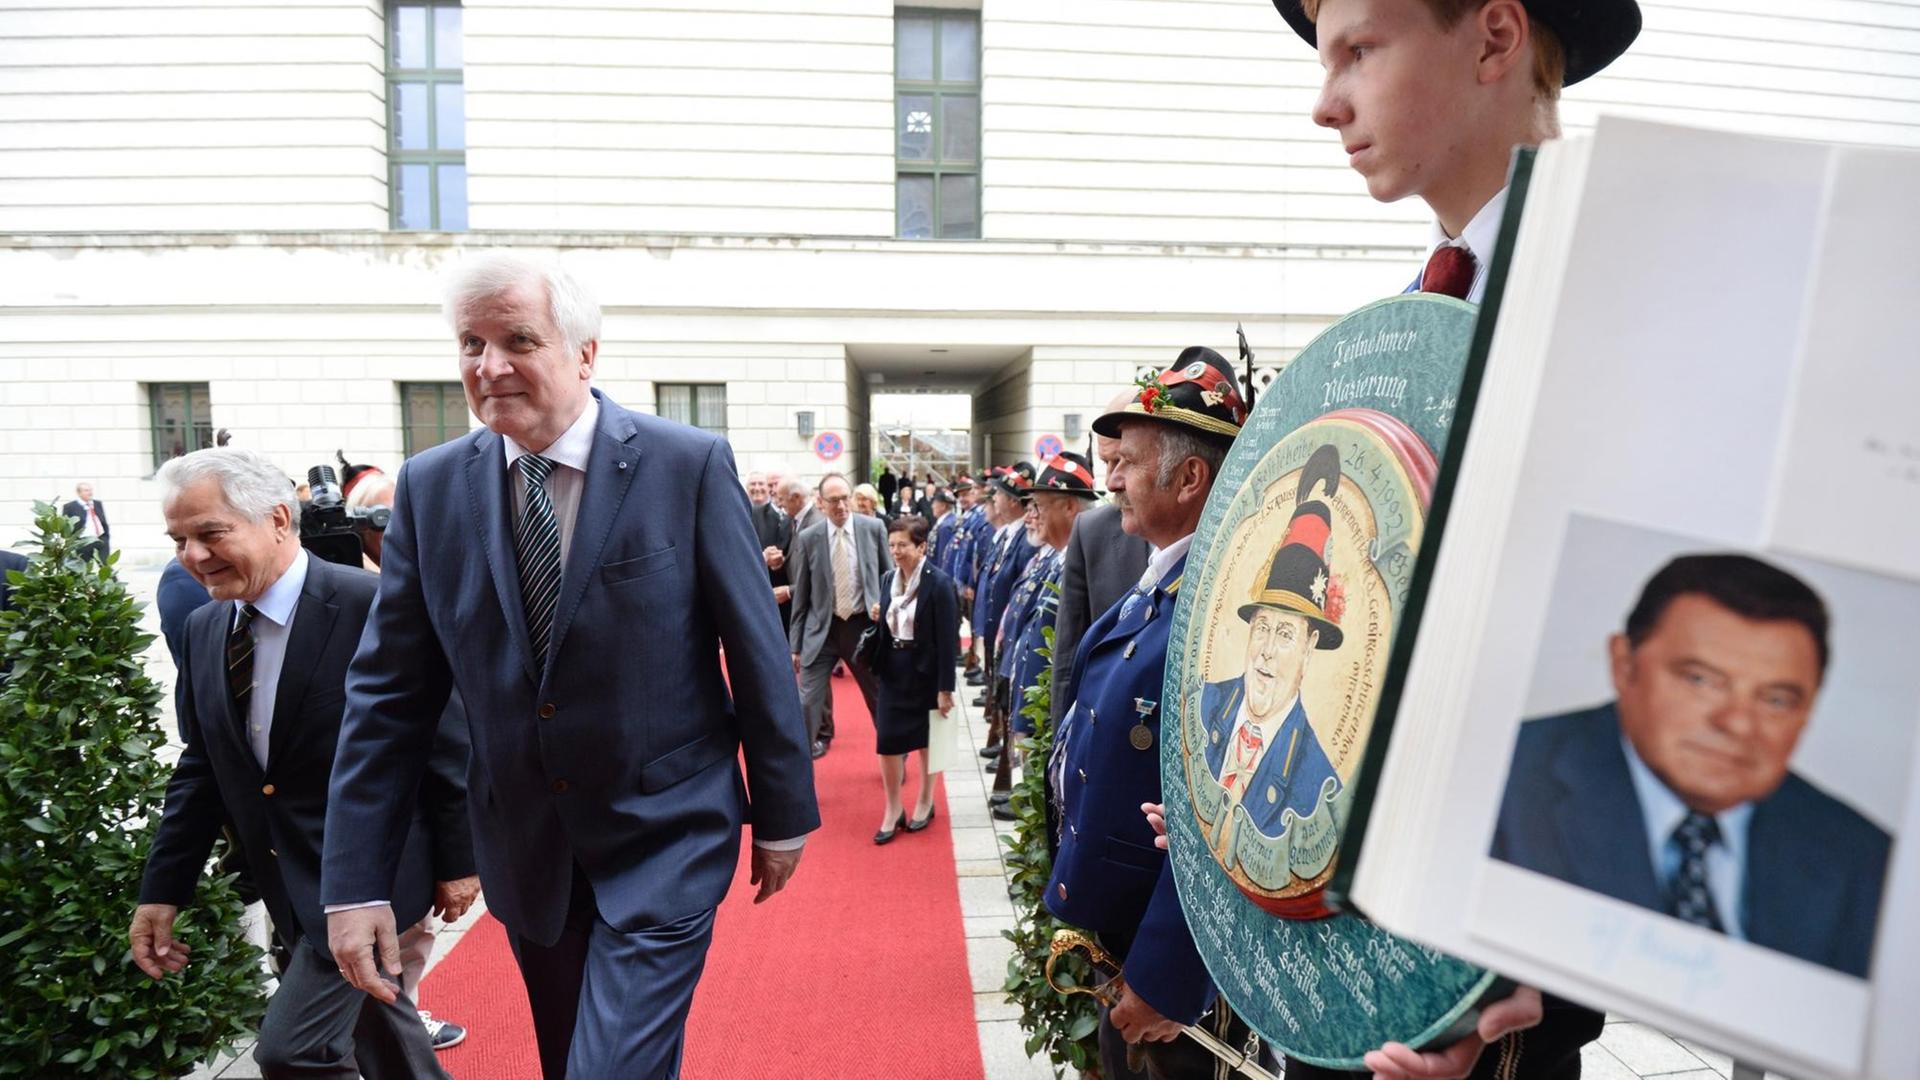 Der bayerische Ministerpräsident Horst Seehofer (CSU) kommt zum Festakt der Hanns-Seidel-Stiftung anlässlich des 100. Geburtstags von Franz Josef Strauß in der Allerheiligen-Hofkirche der Residenz in München (Bayern) und geht dabei an einem Portrait des ehemaligen bayerischen Ministerpräsidenten vorbei.